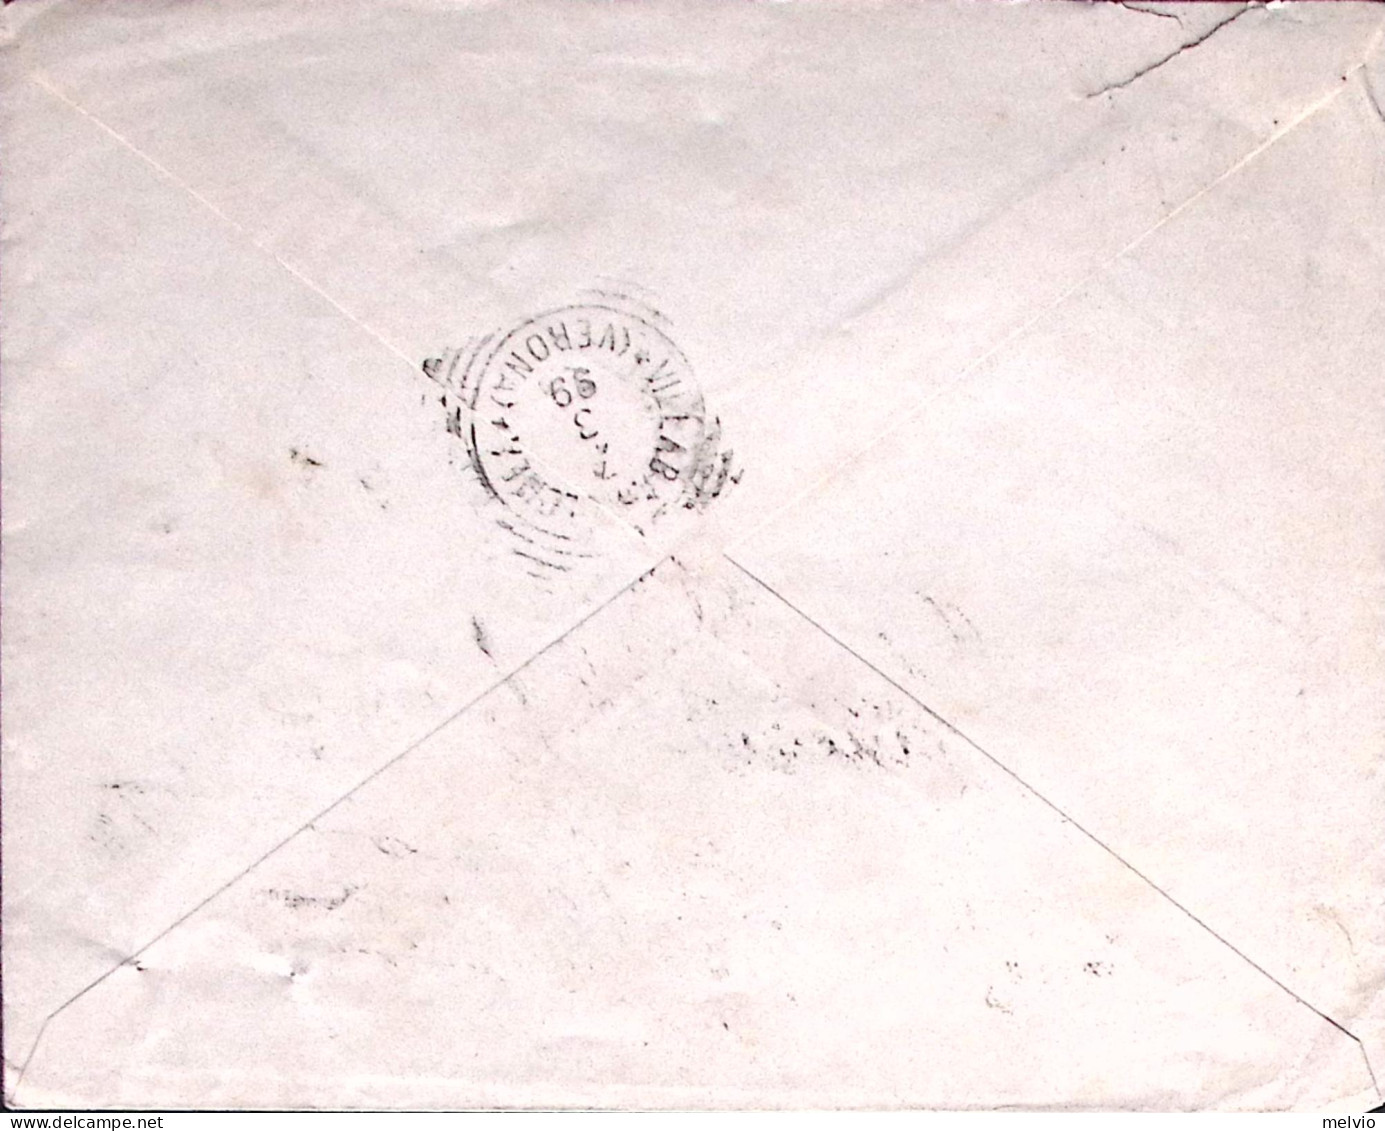 1899-SUZZARA Casali F.-Figli Intestazione A Stampa Di Busta (6.3) - Poststempel